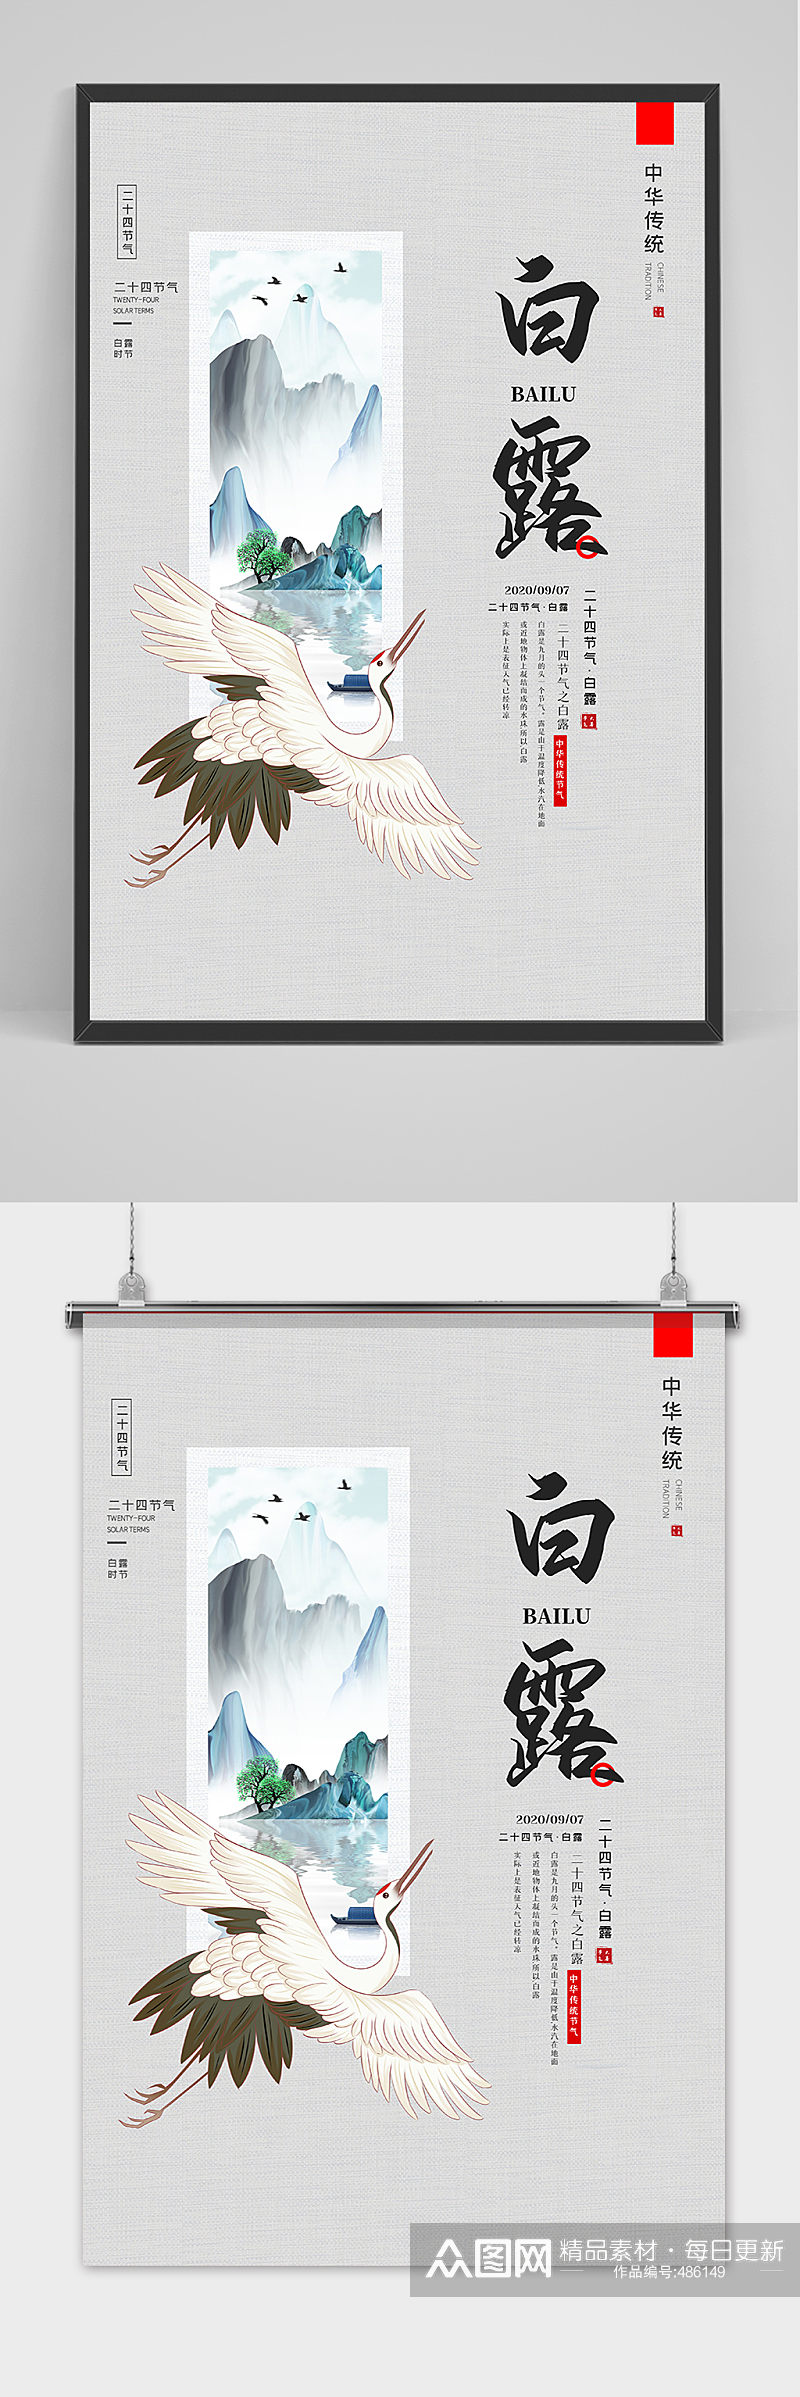 白露节中国风手绘水墨海报素材